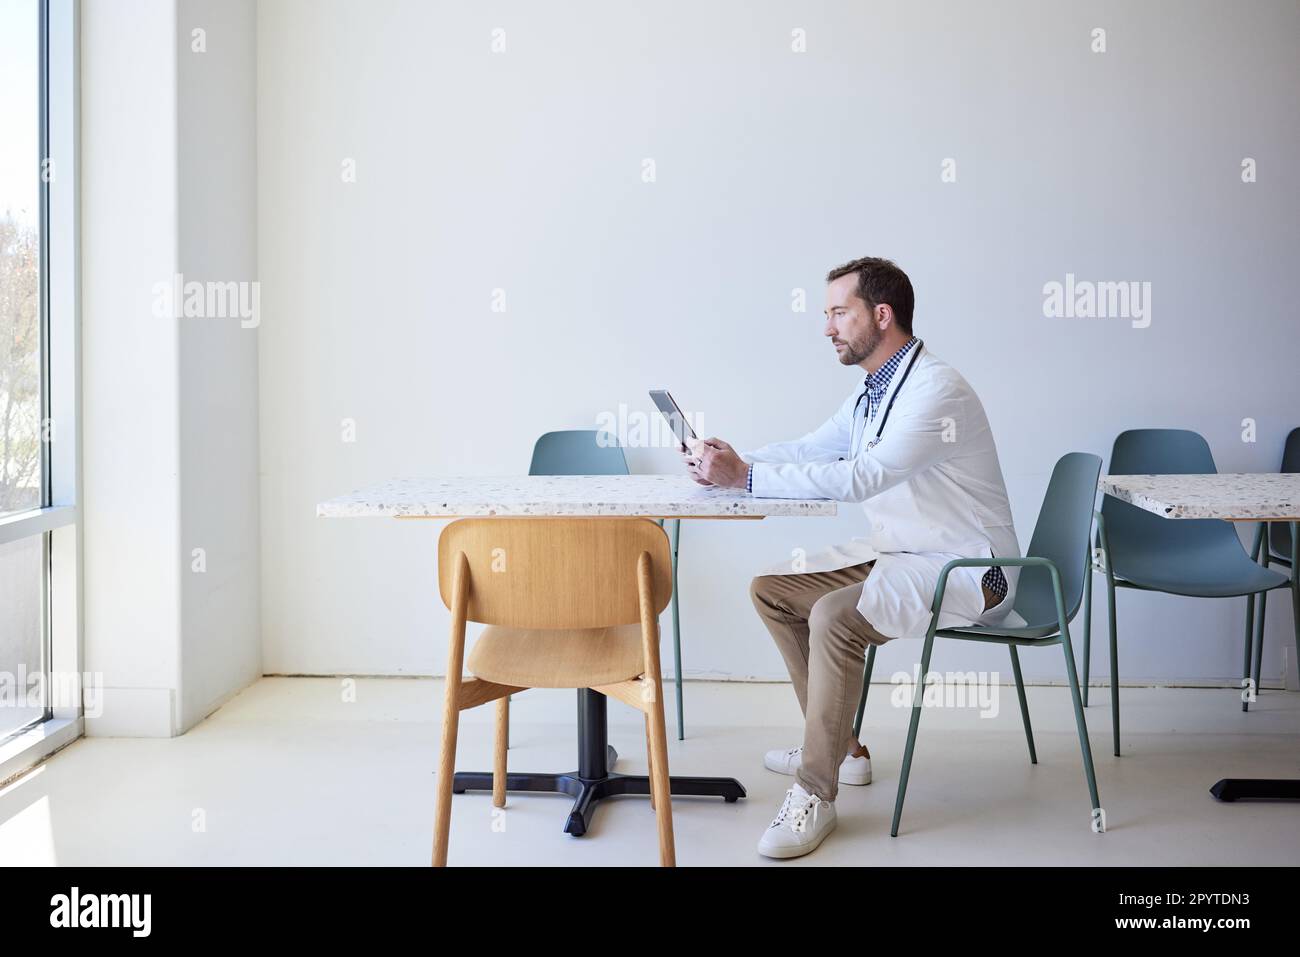 Vue latérale d'un médecin de sexe masculin utilisant une tablette PC tout en étant assis sur une chaise Banque D'Images